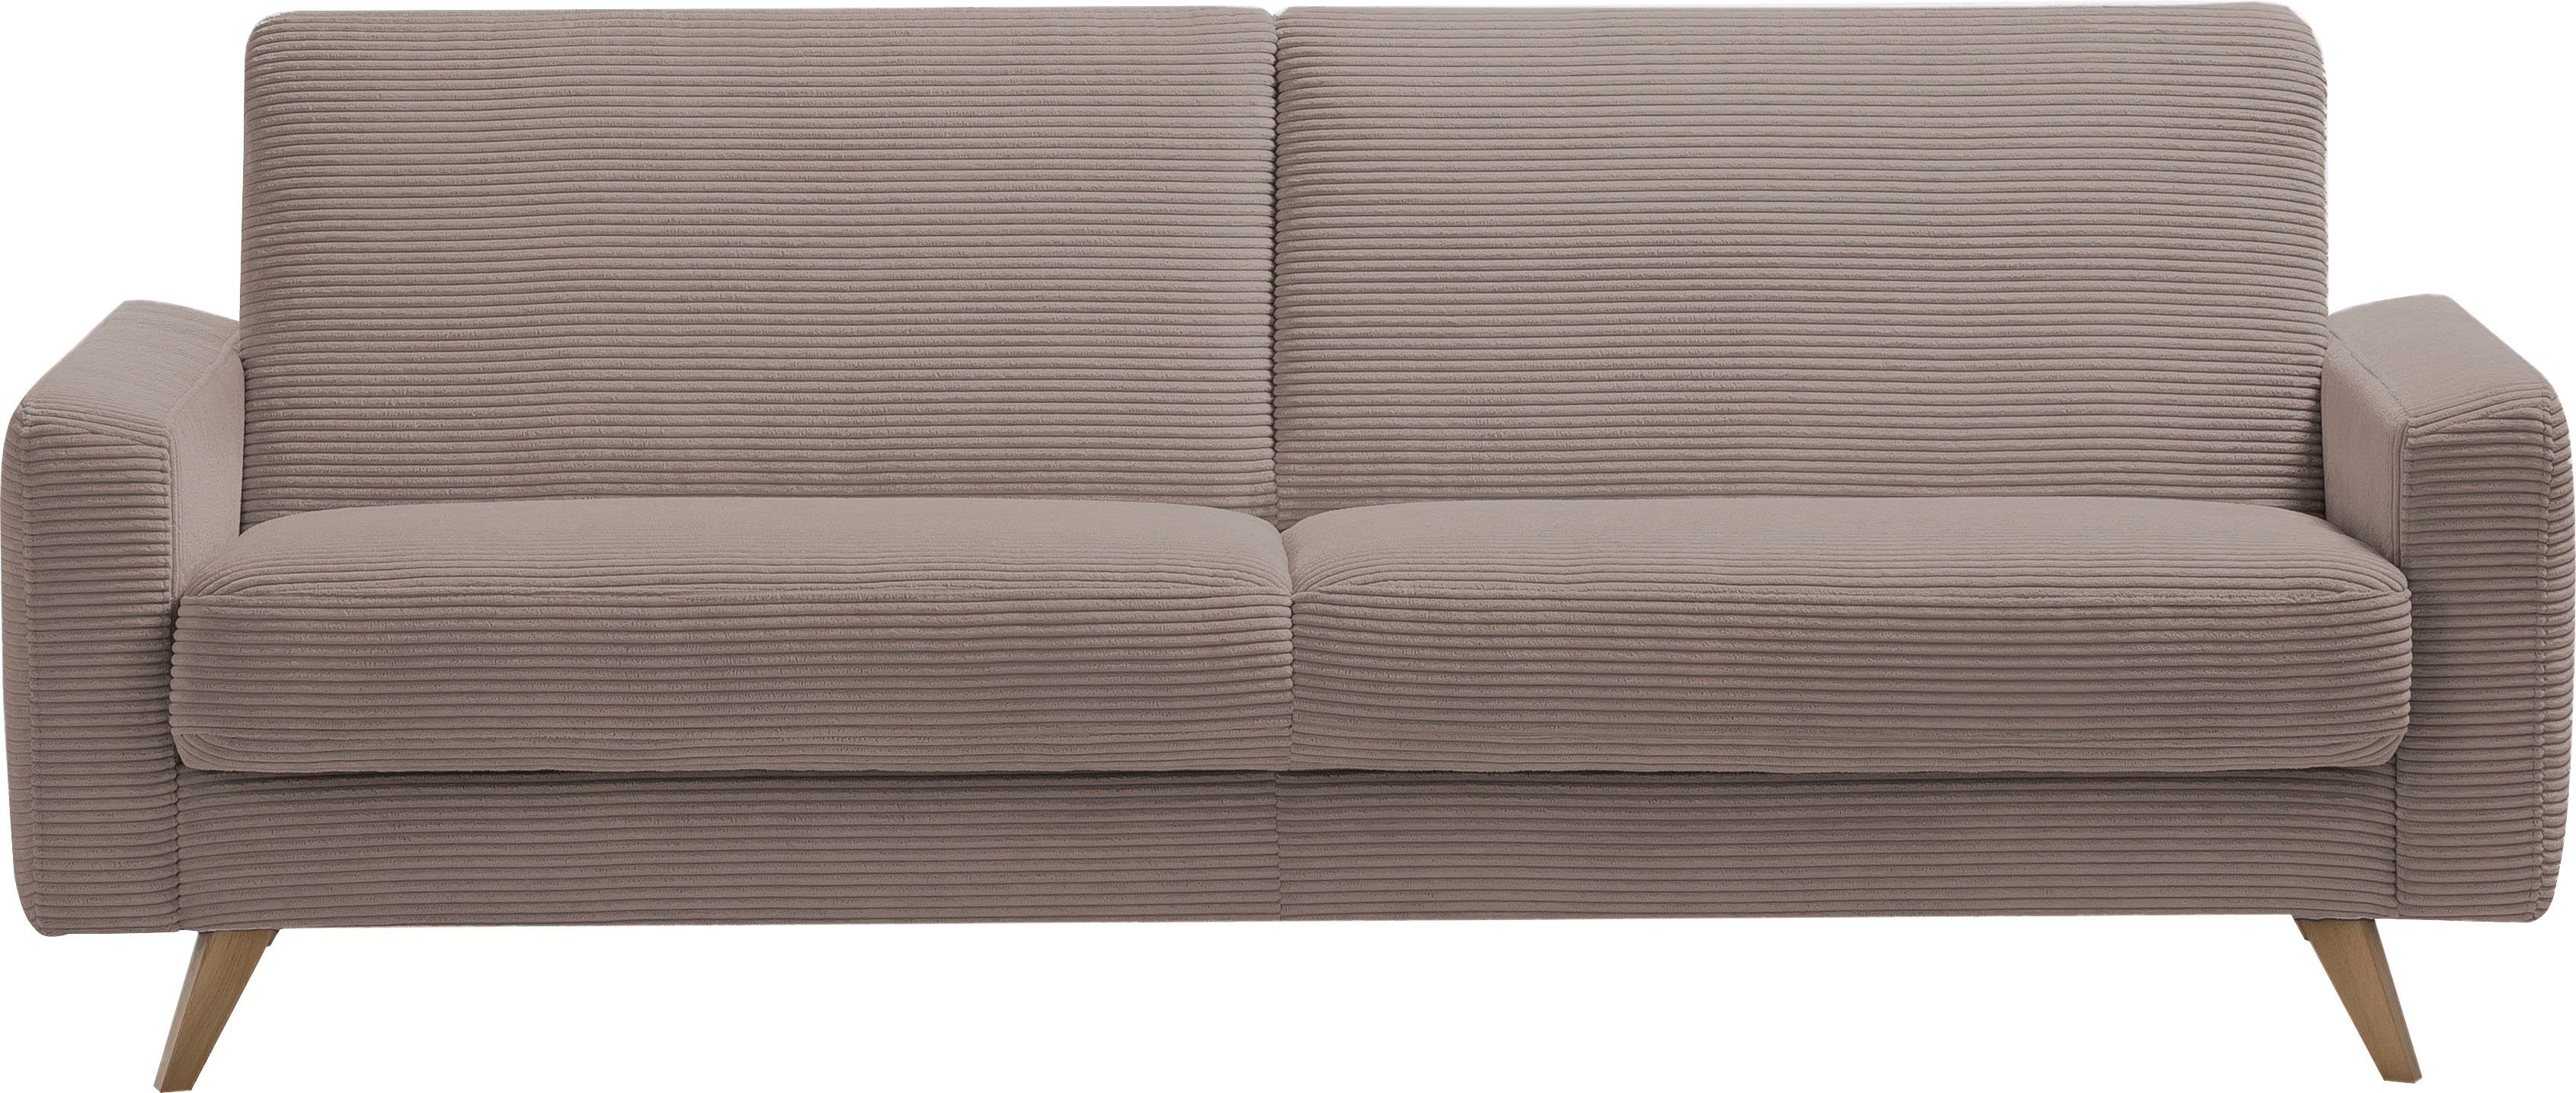 [Wird immer beliebter] exxpo - Samso, Inklusive 3-Sitzer Bettfunktion fashion cappucino sofa und Bettkasten